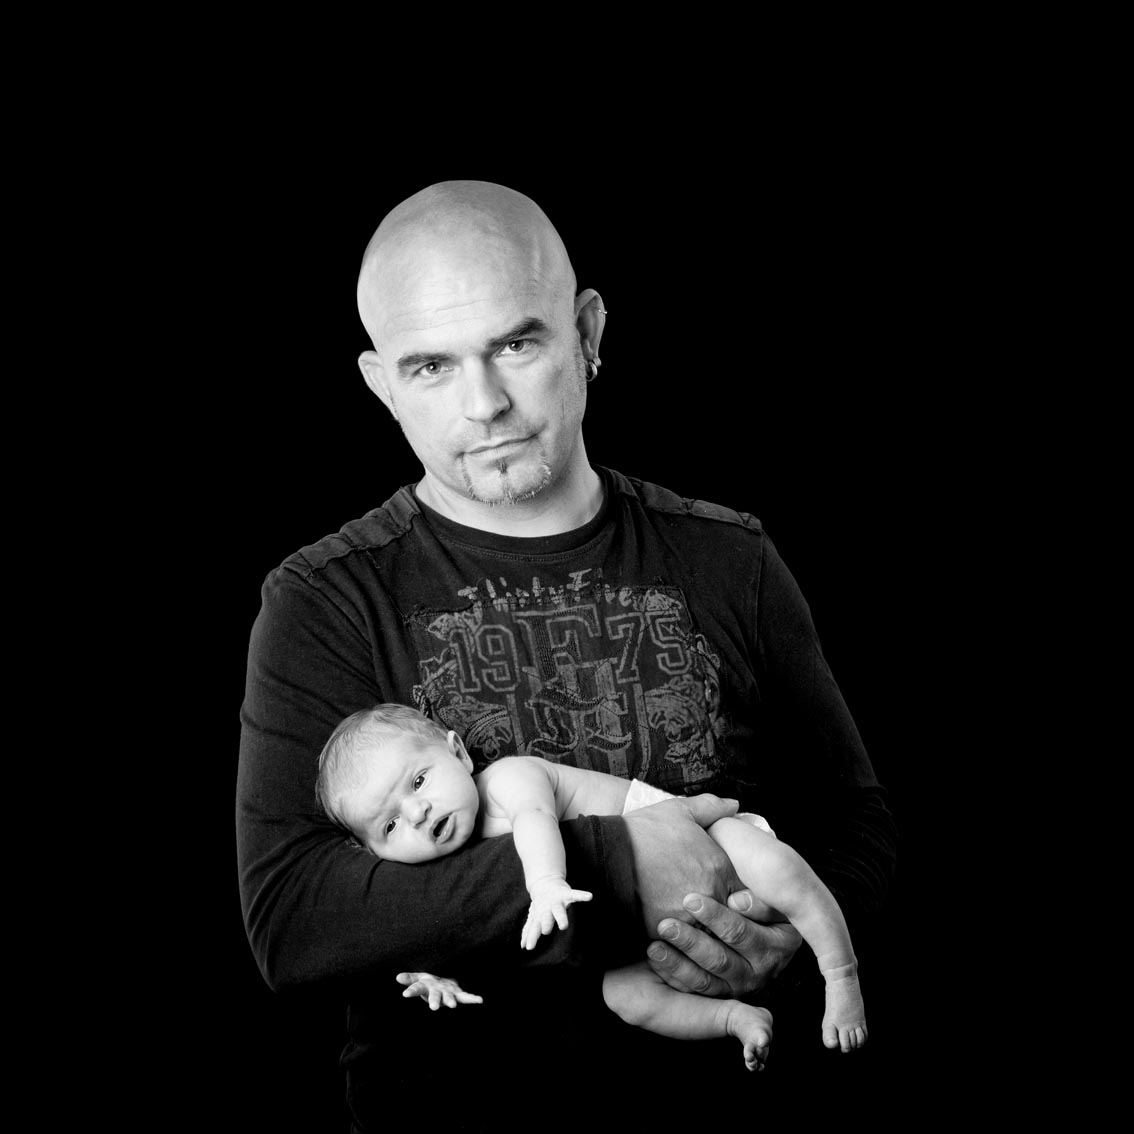 Mann und Baby, schwarz-weiß Fotografie, Portrait